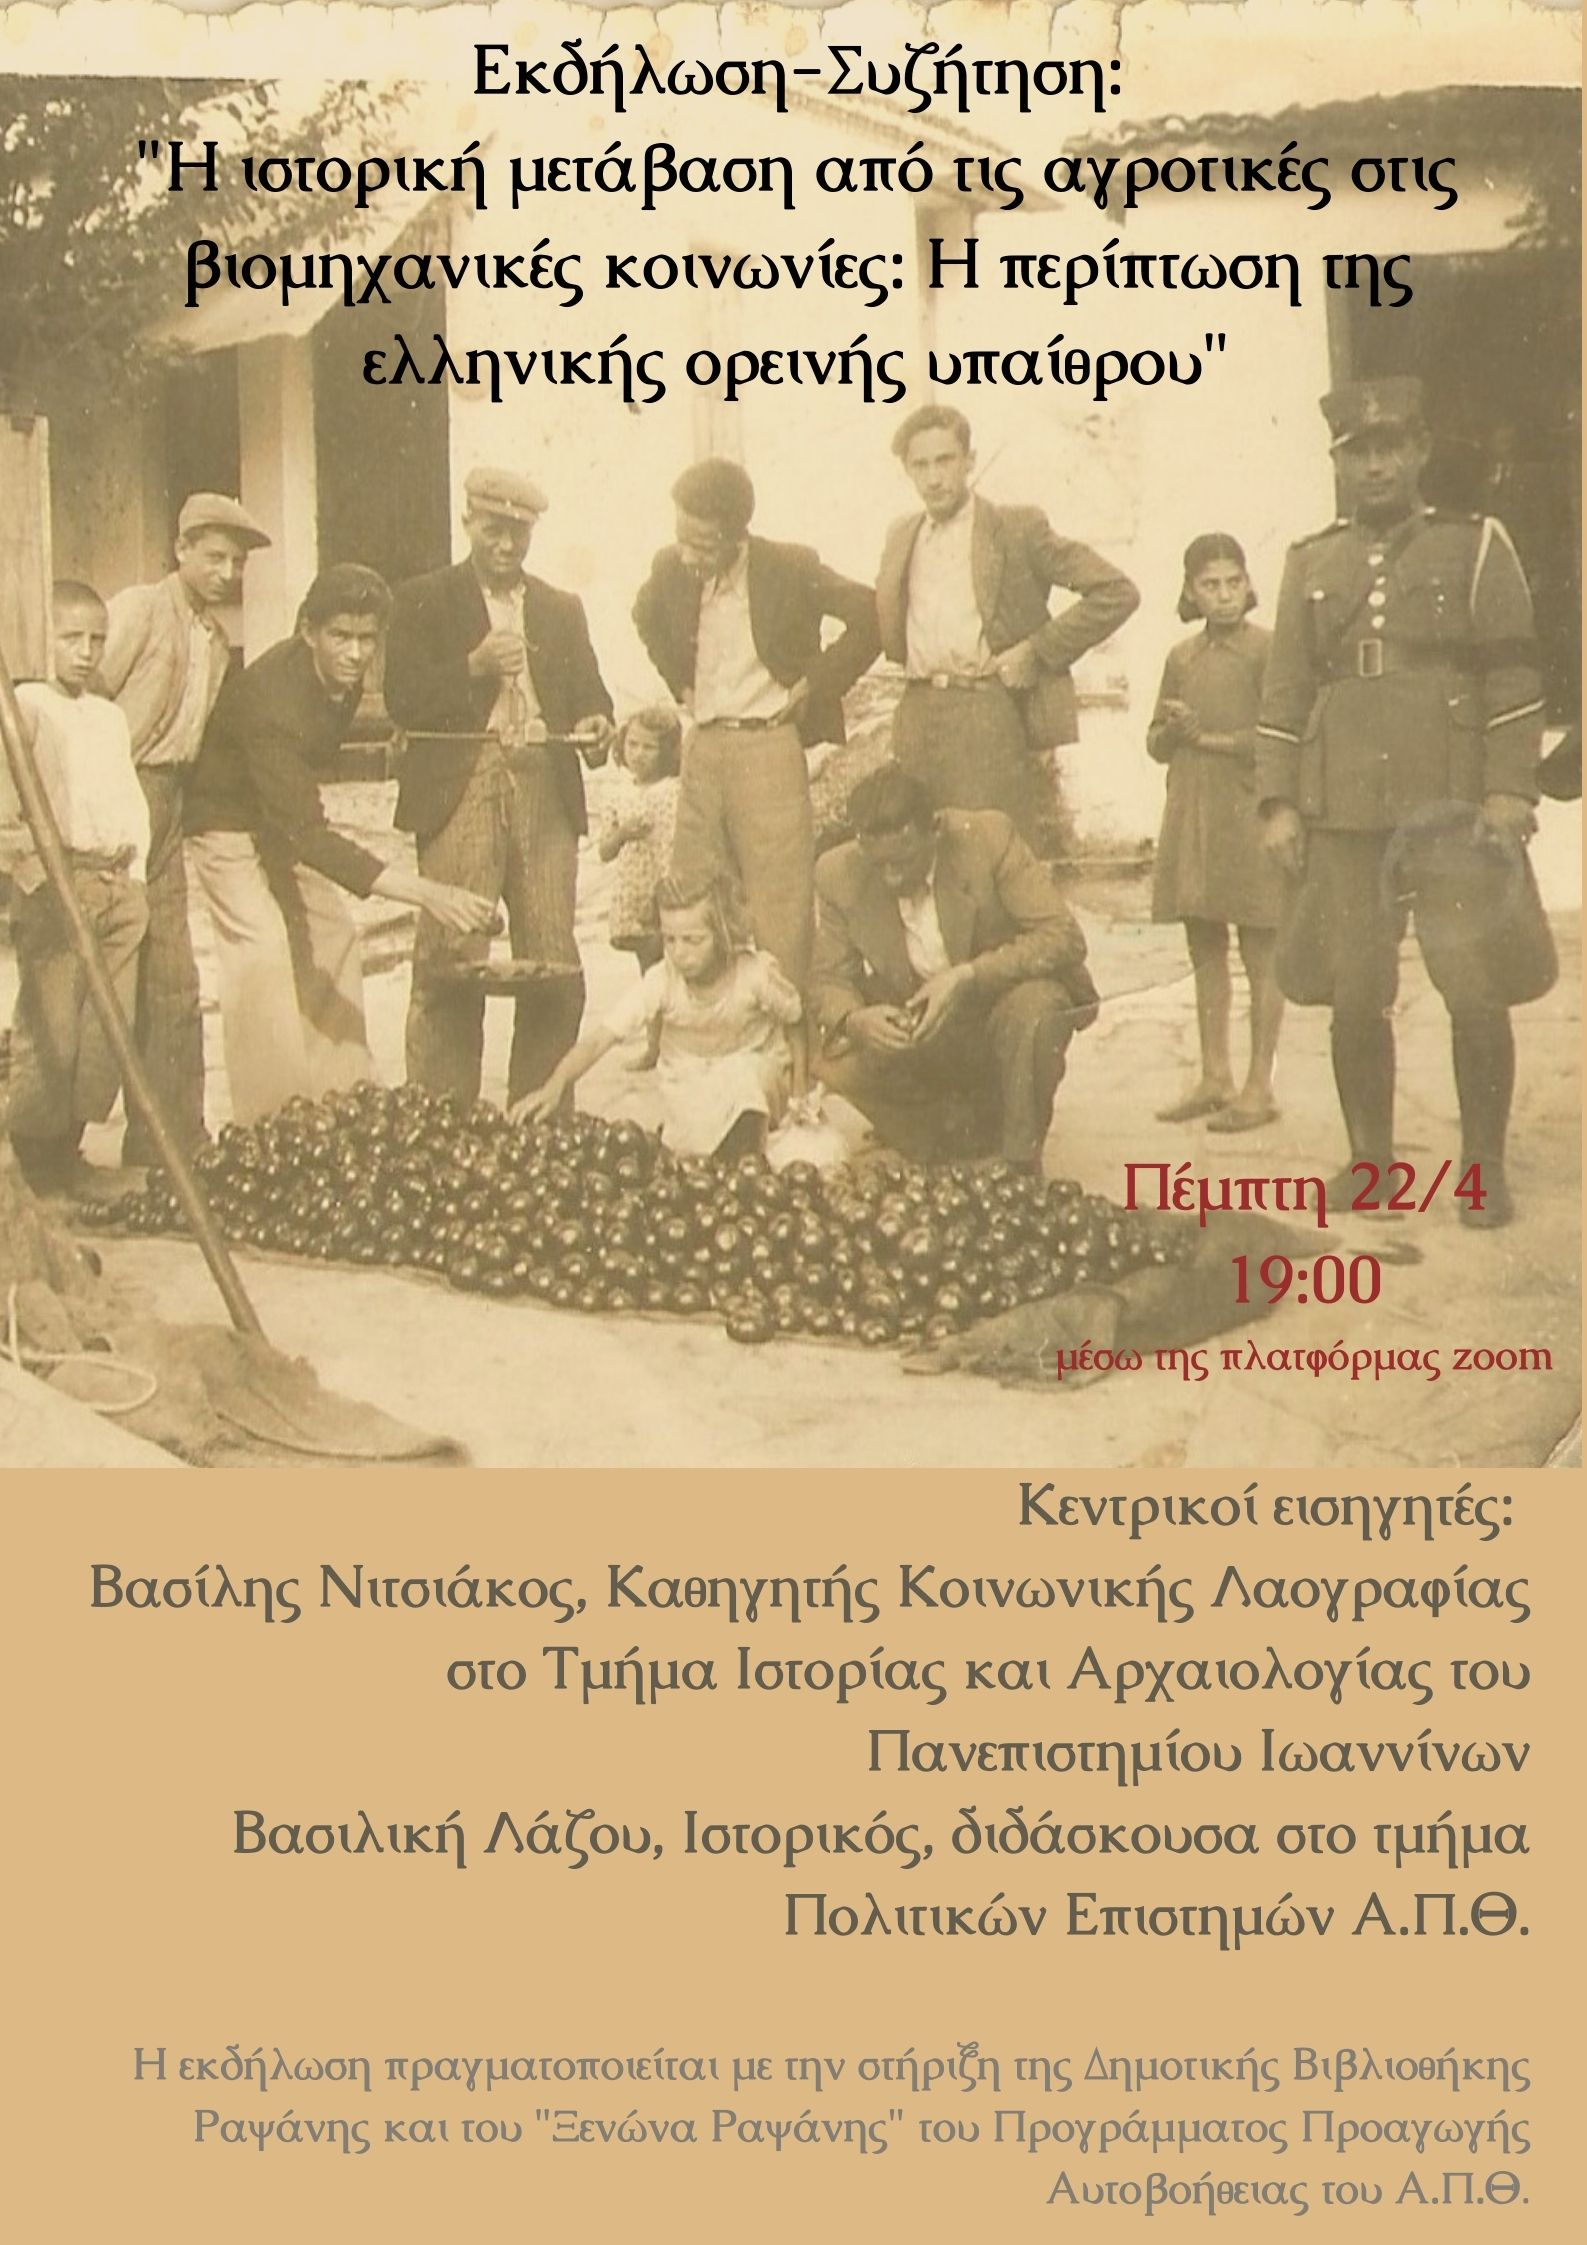 Εκδήλωση-Συζήτηση: “Η ιστορική μετάβαση από τις αγροτικές στις βιομηχανικές κοινωνίες: Η περίπτωση της ελληνικής ορεινής υπαίθρου”